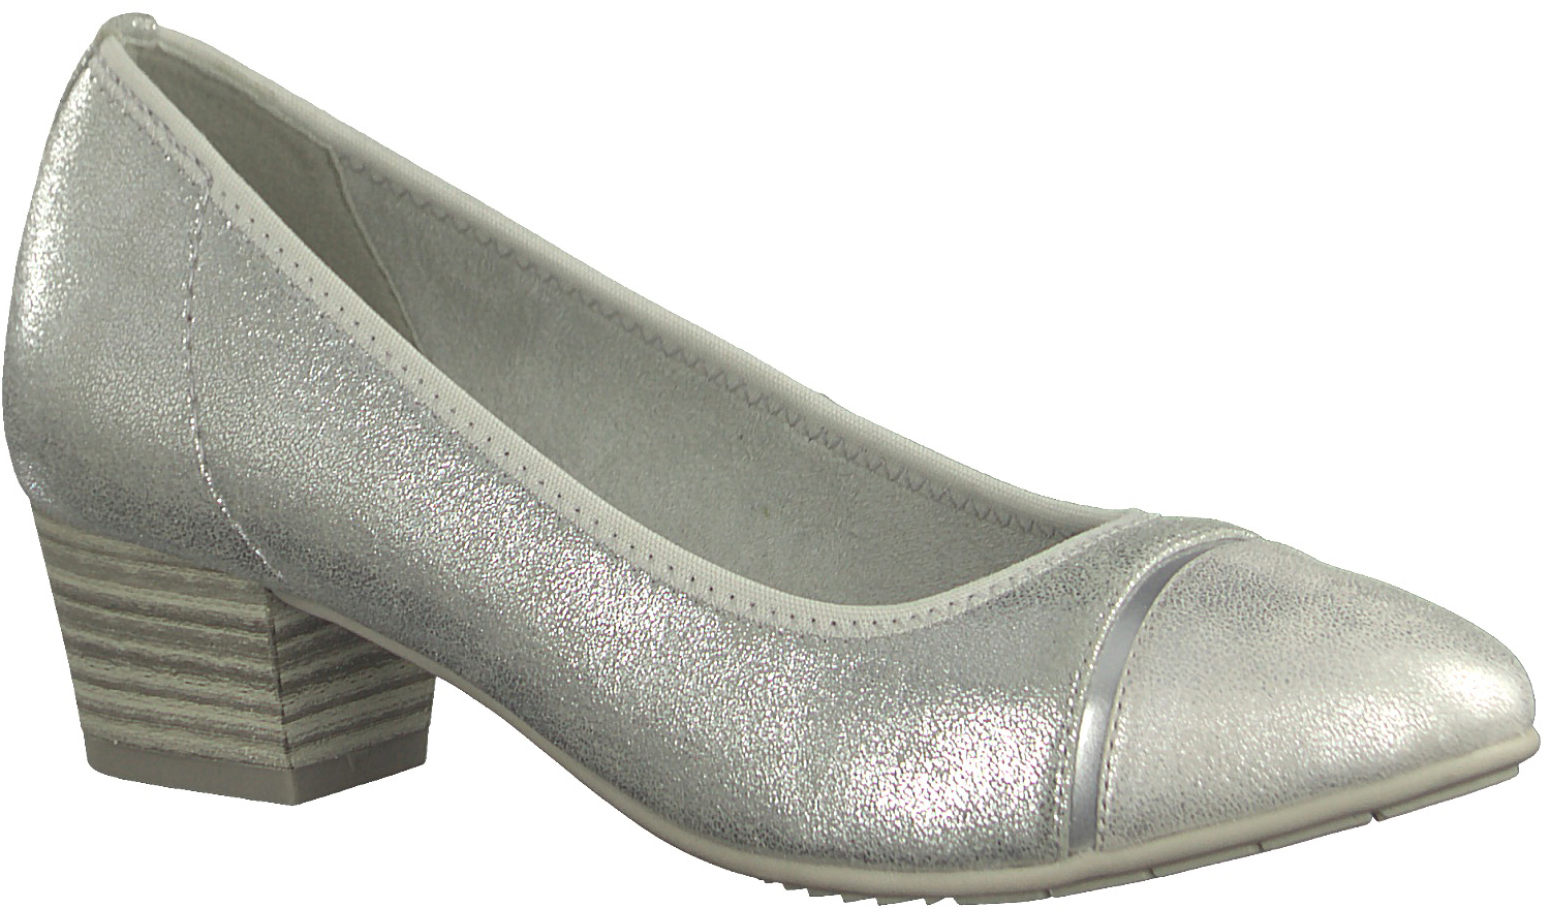 Туфли женские Jana, цвет: серебристый. 8-8-22300-20-941/220. Размер 39